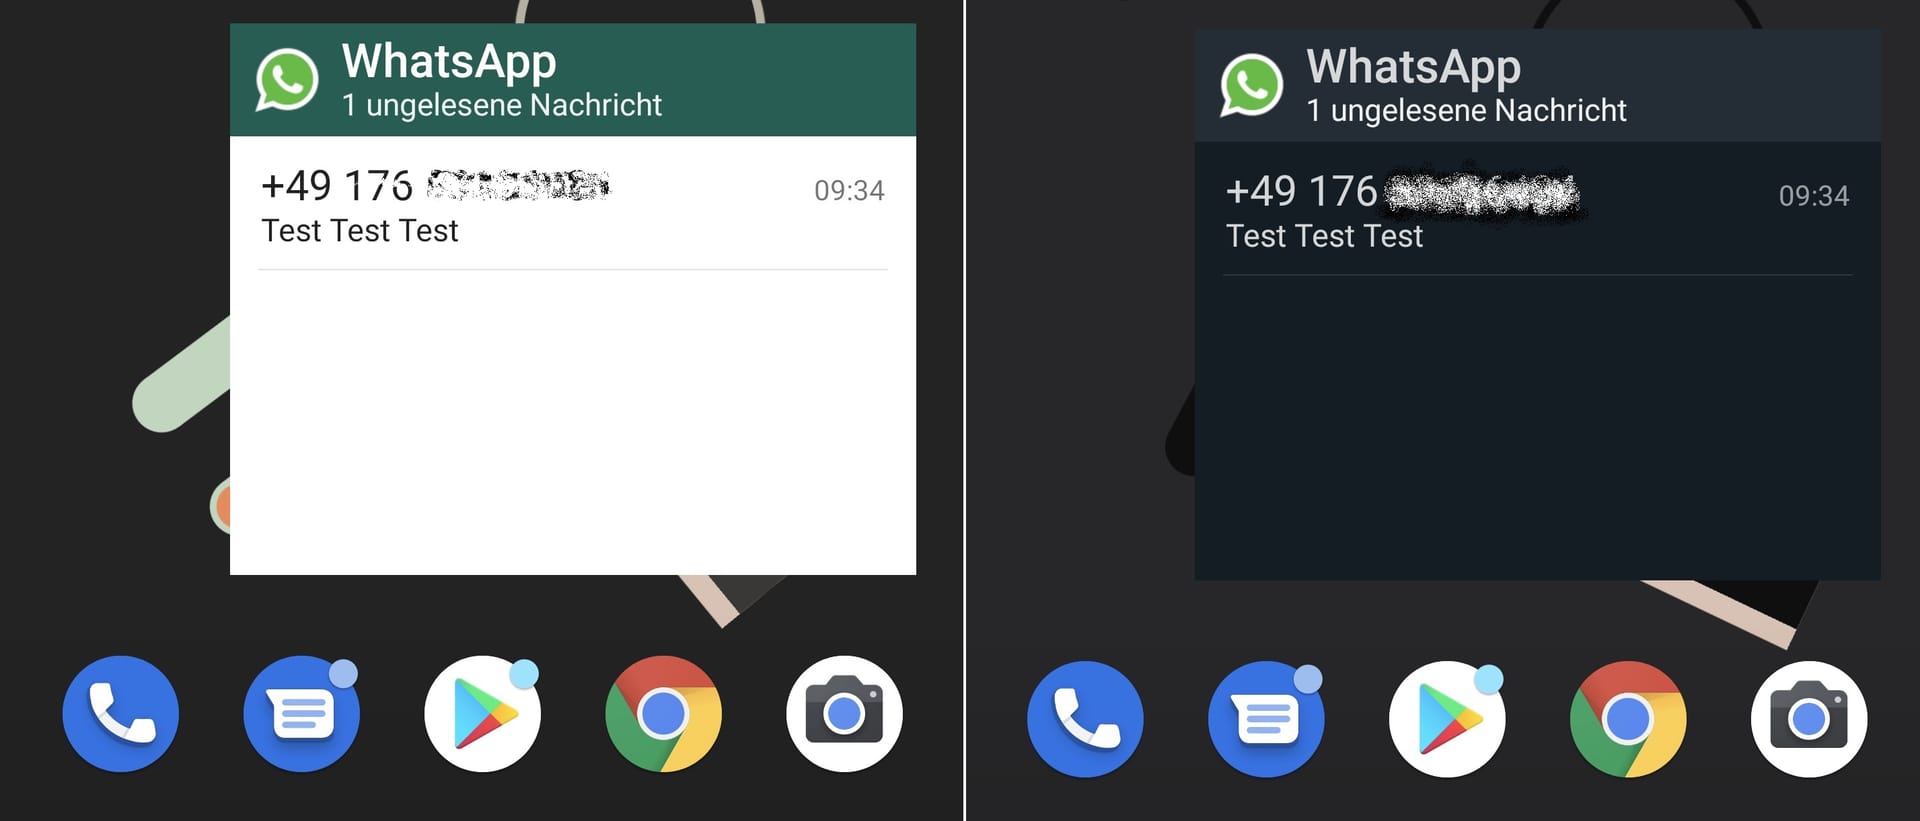 Whatsapp-Widgets gibt es jetzt in hell und dunkel